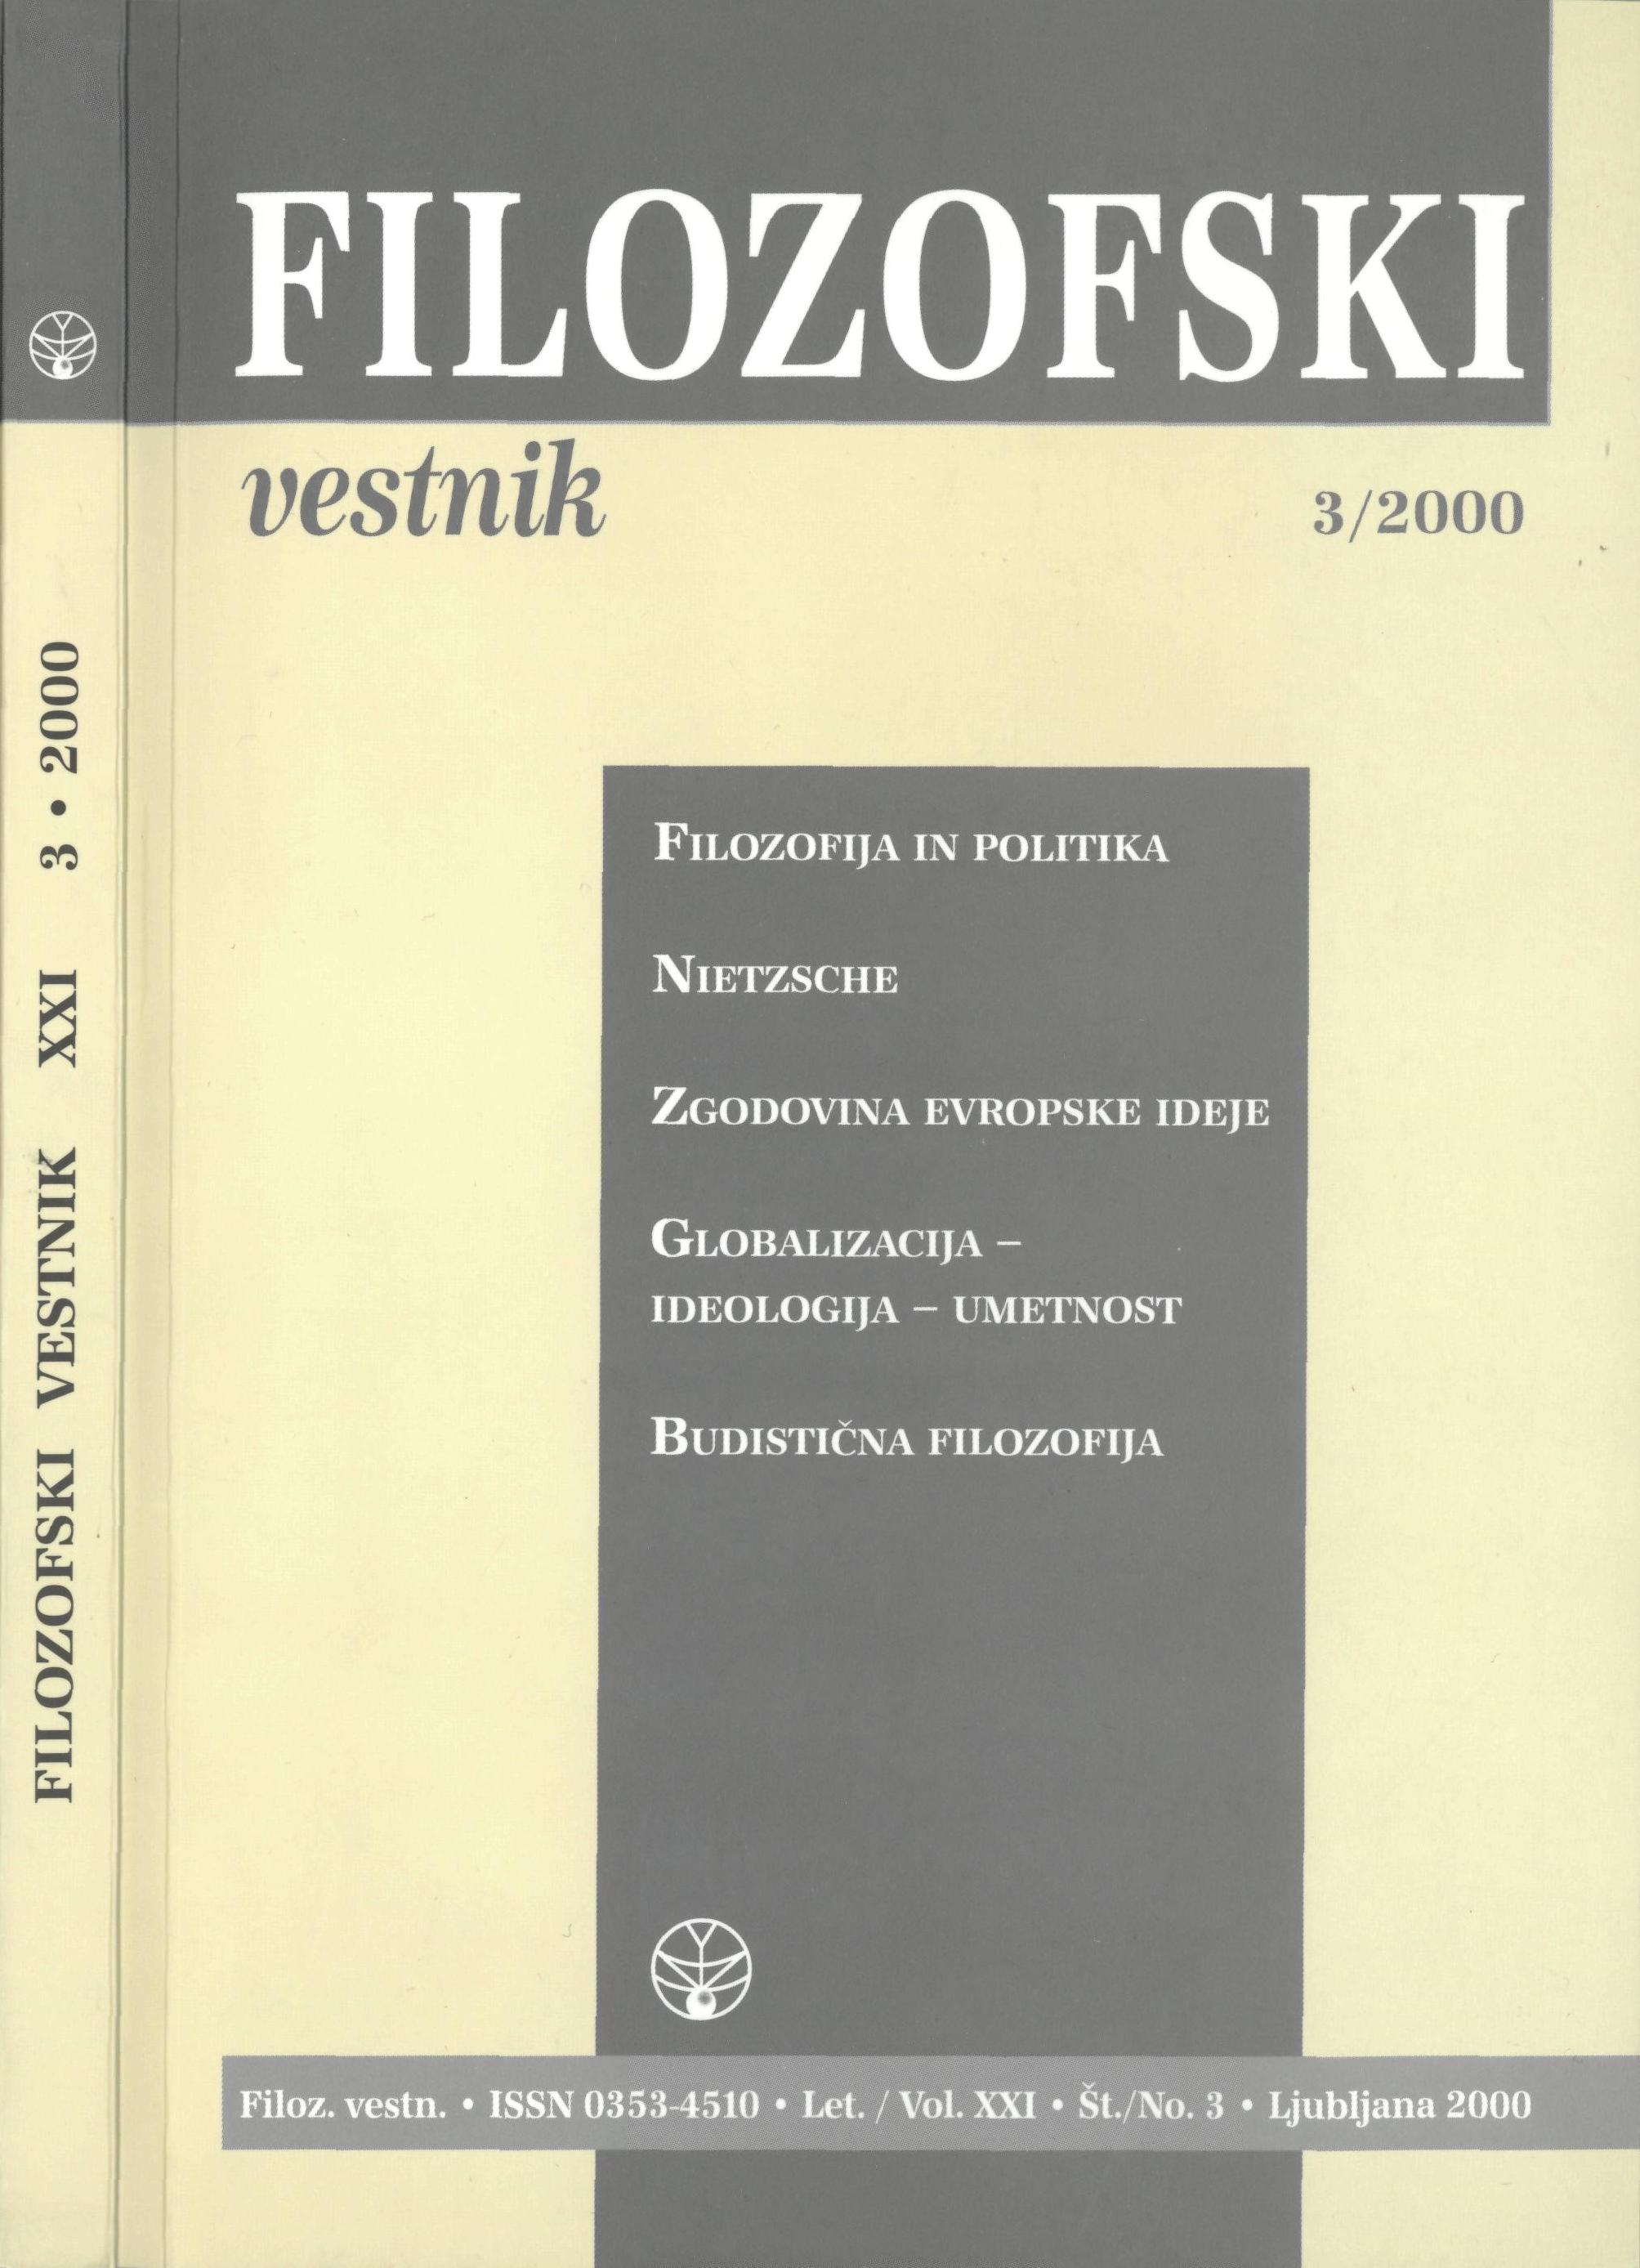 					Poglej Letn. 21 Št. 3 (2000): Filozofija in politika, Nietzsche, Zgodovina evropske ideje, Globalizacija - ideologija - umetnost, Budistična filozofij
				